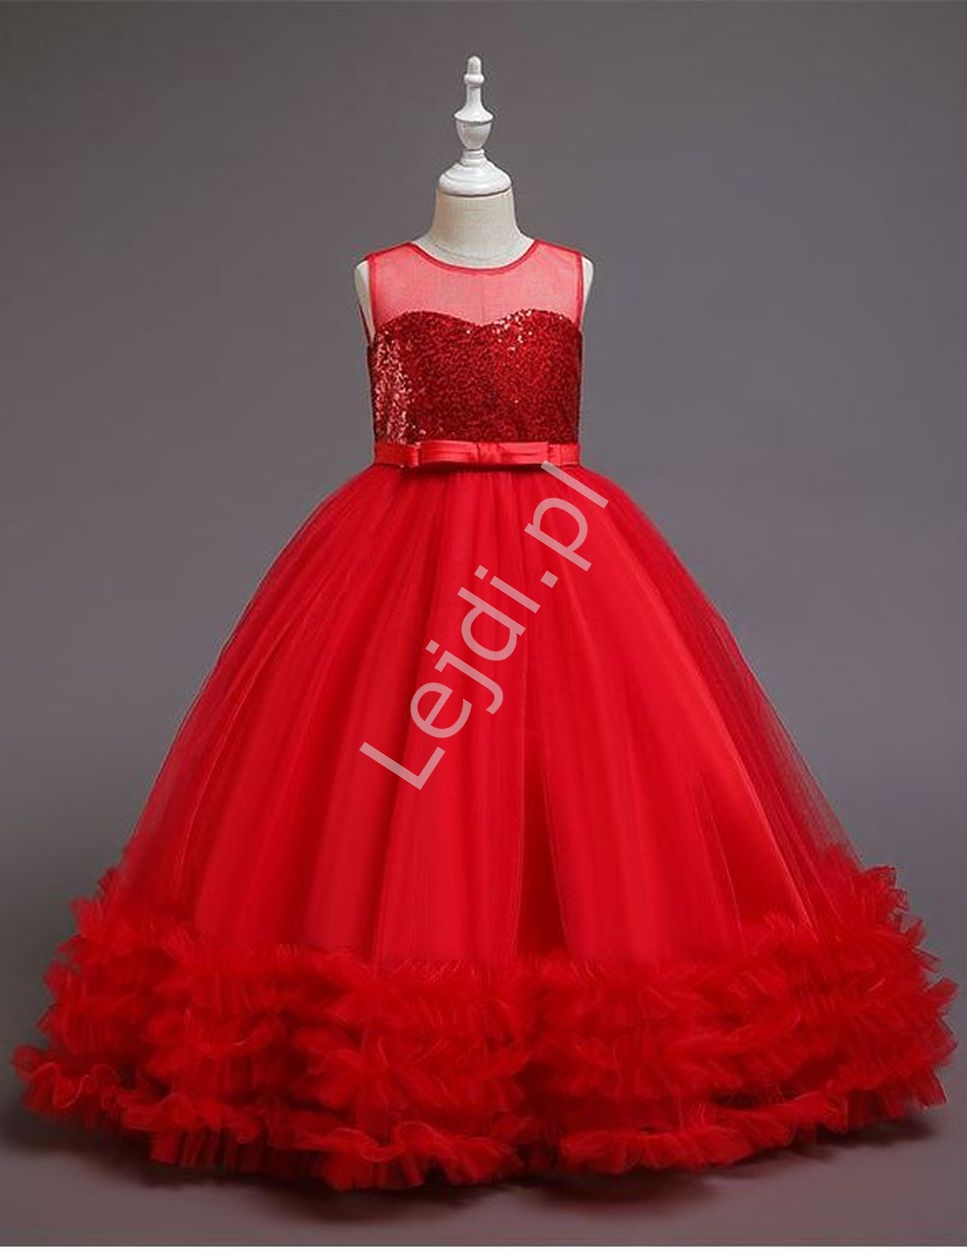 Czerwona suknia dziecięca na wesele, dla małej druhny, balowa suknia dla dziewczynki